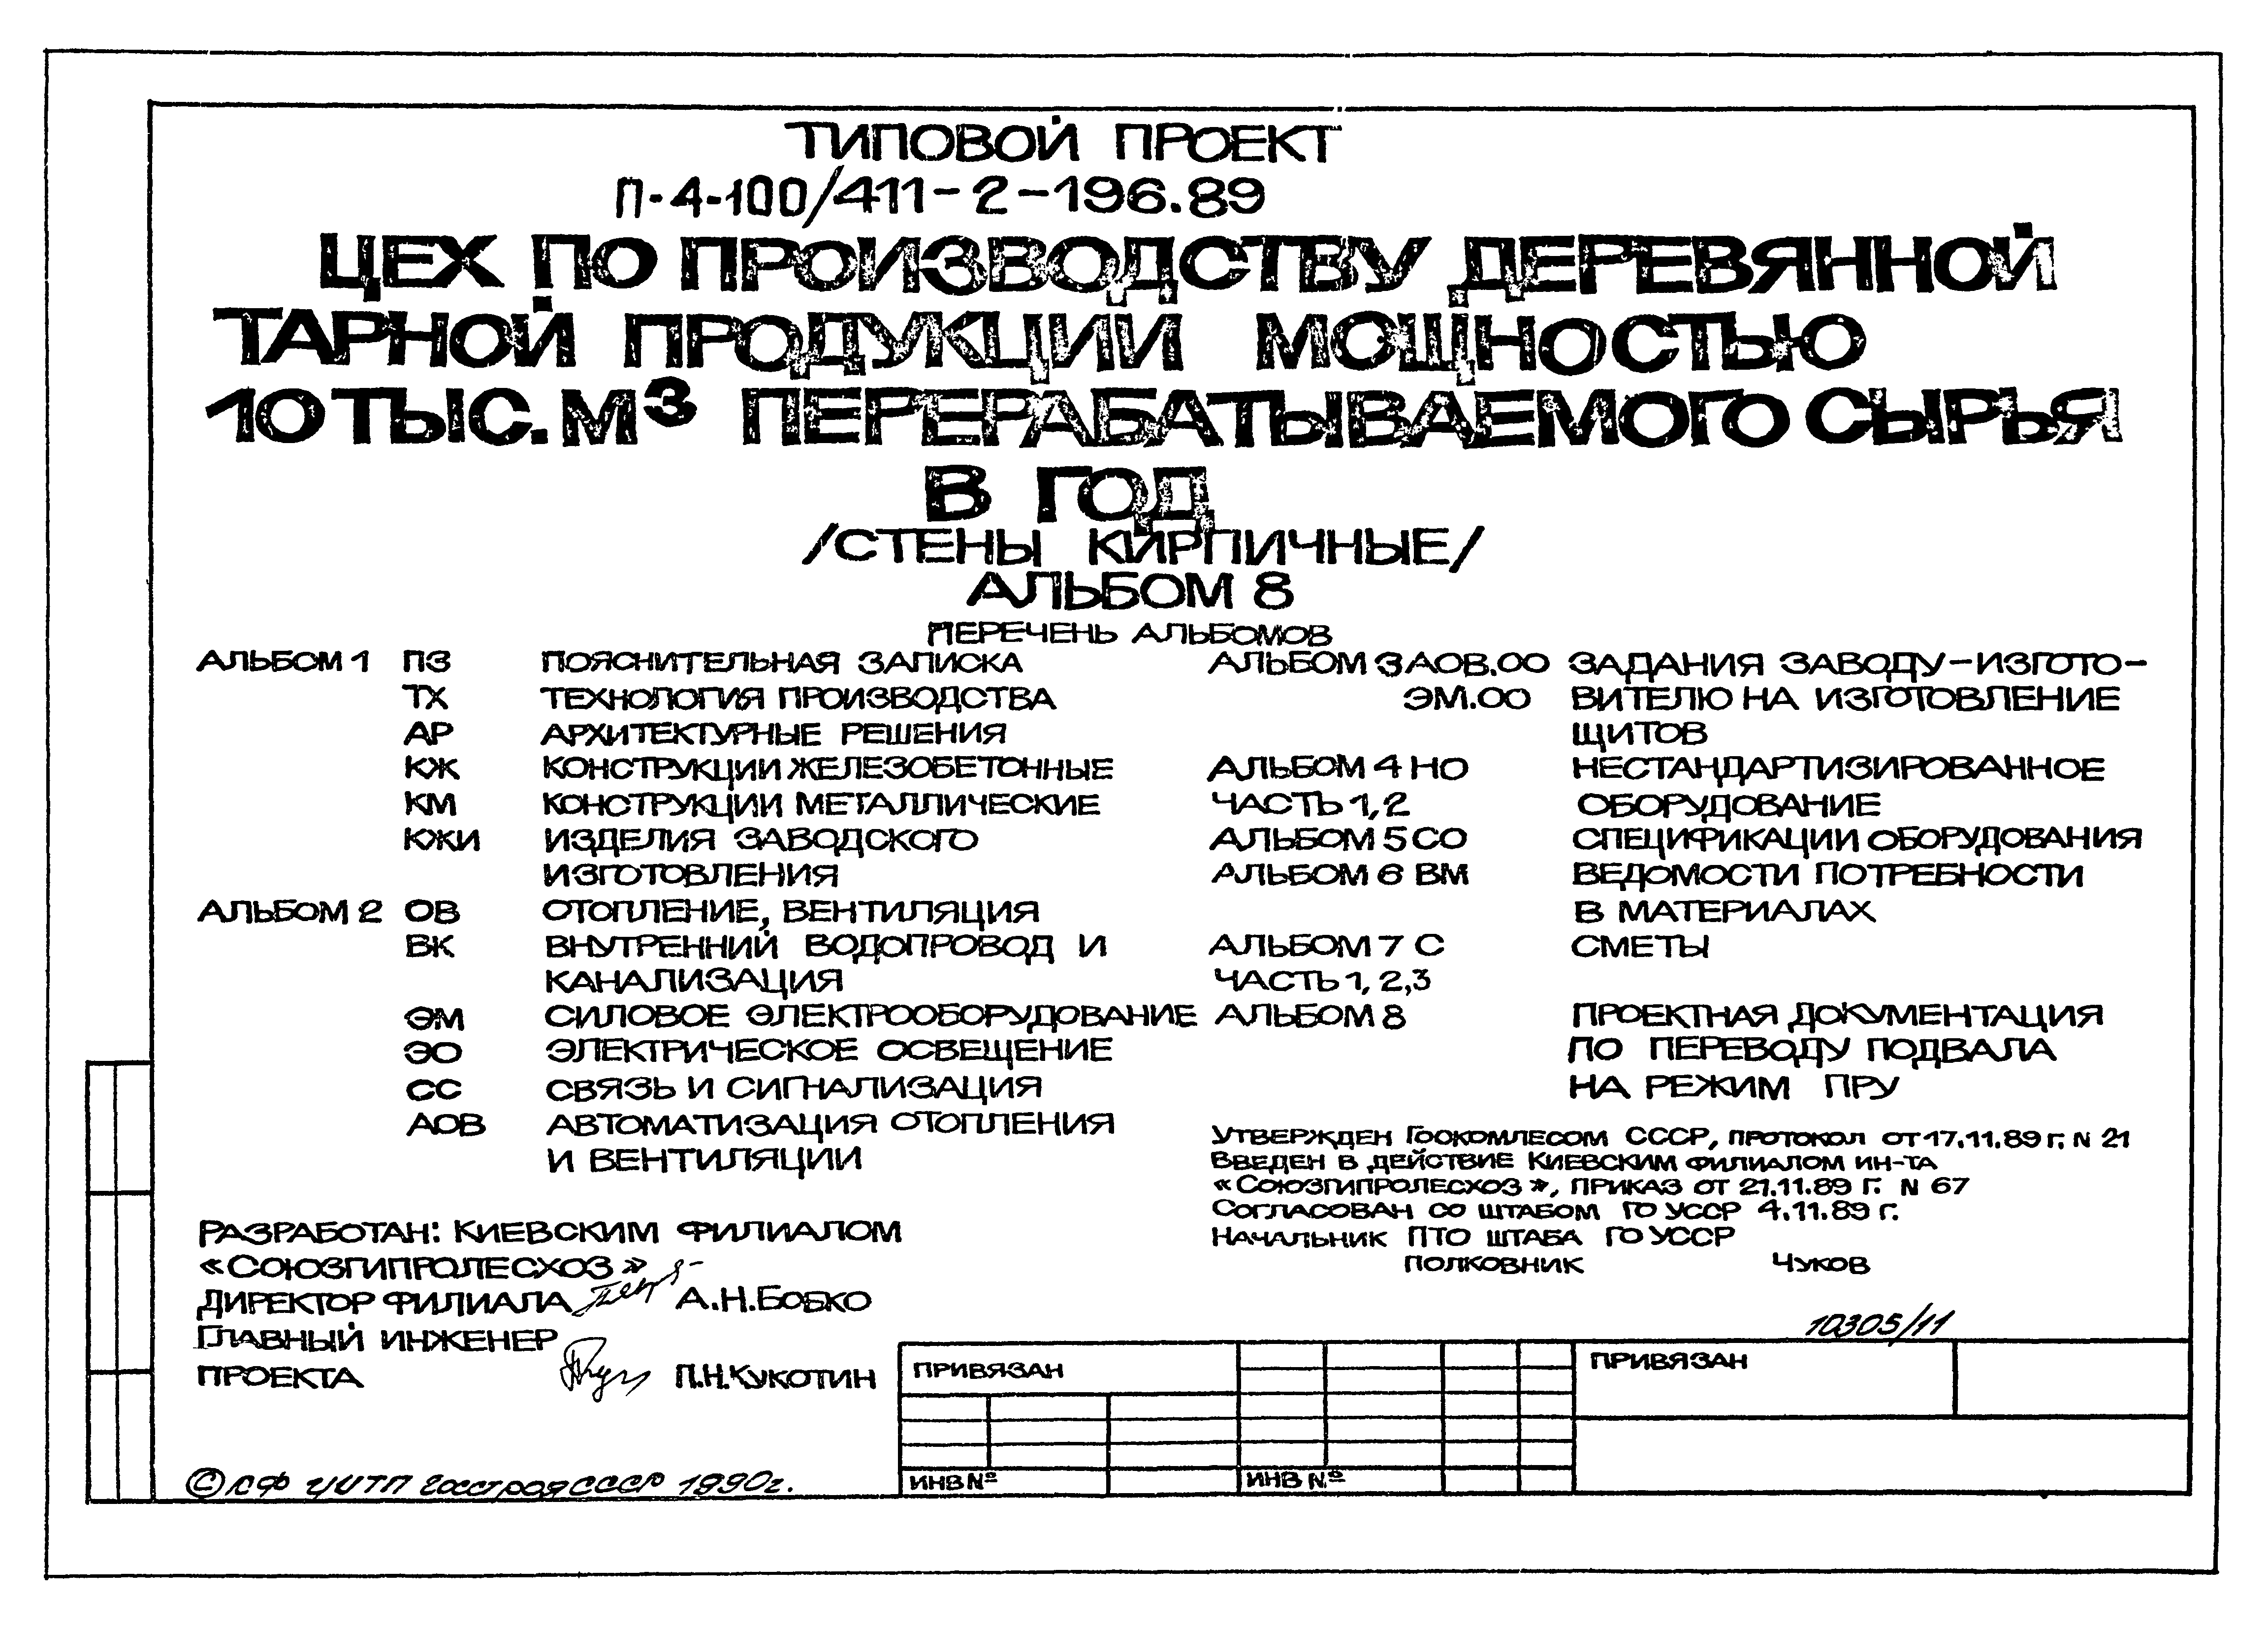 Типовой проект 411-2-196.89